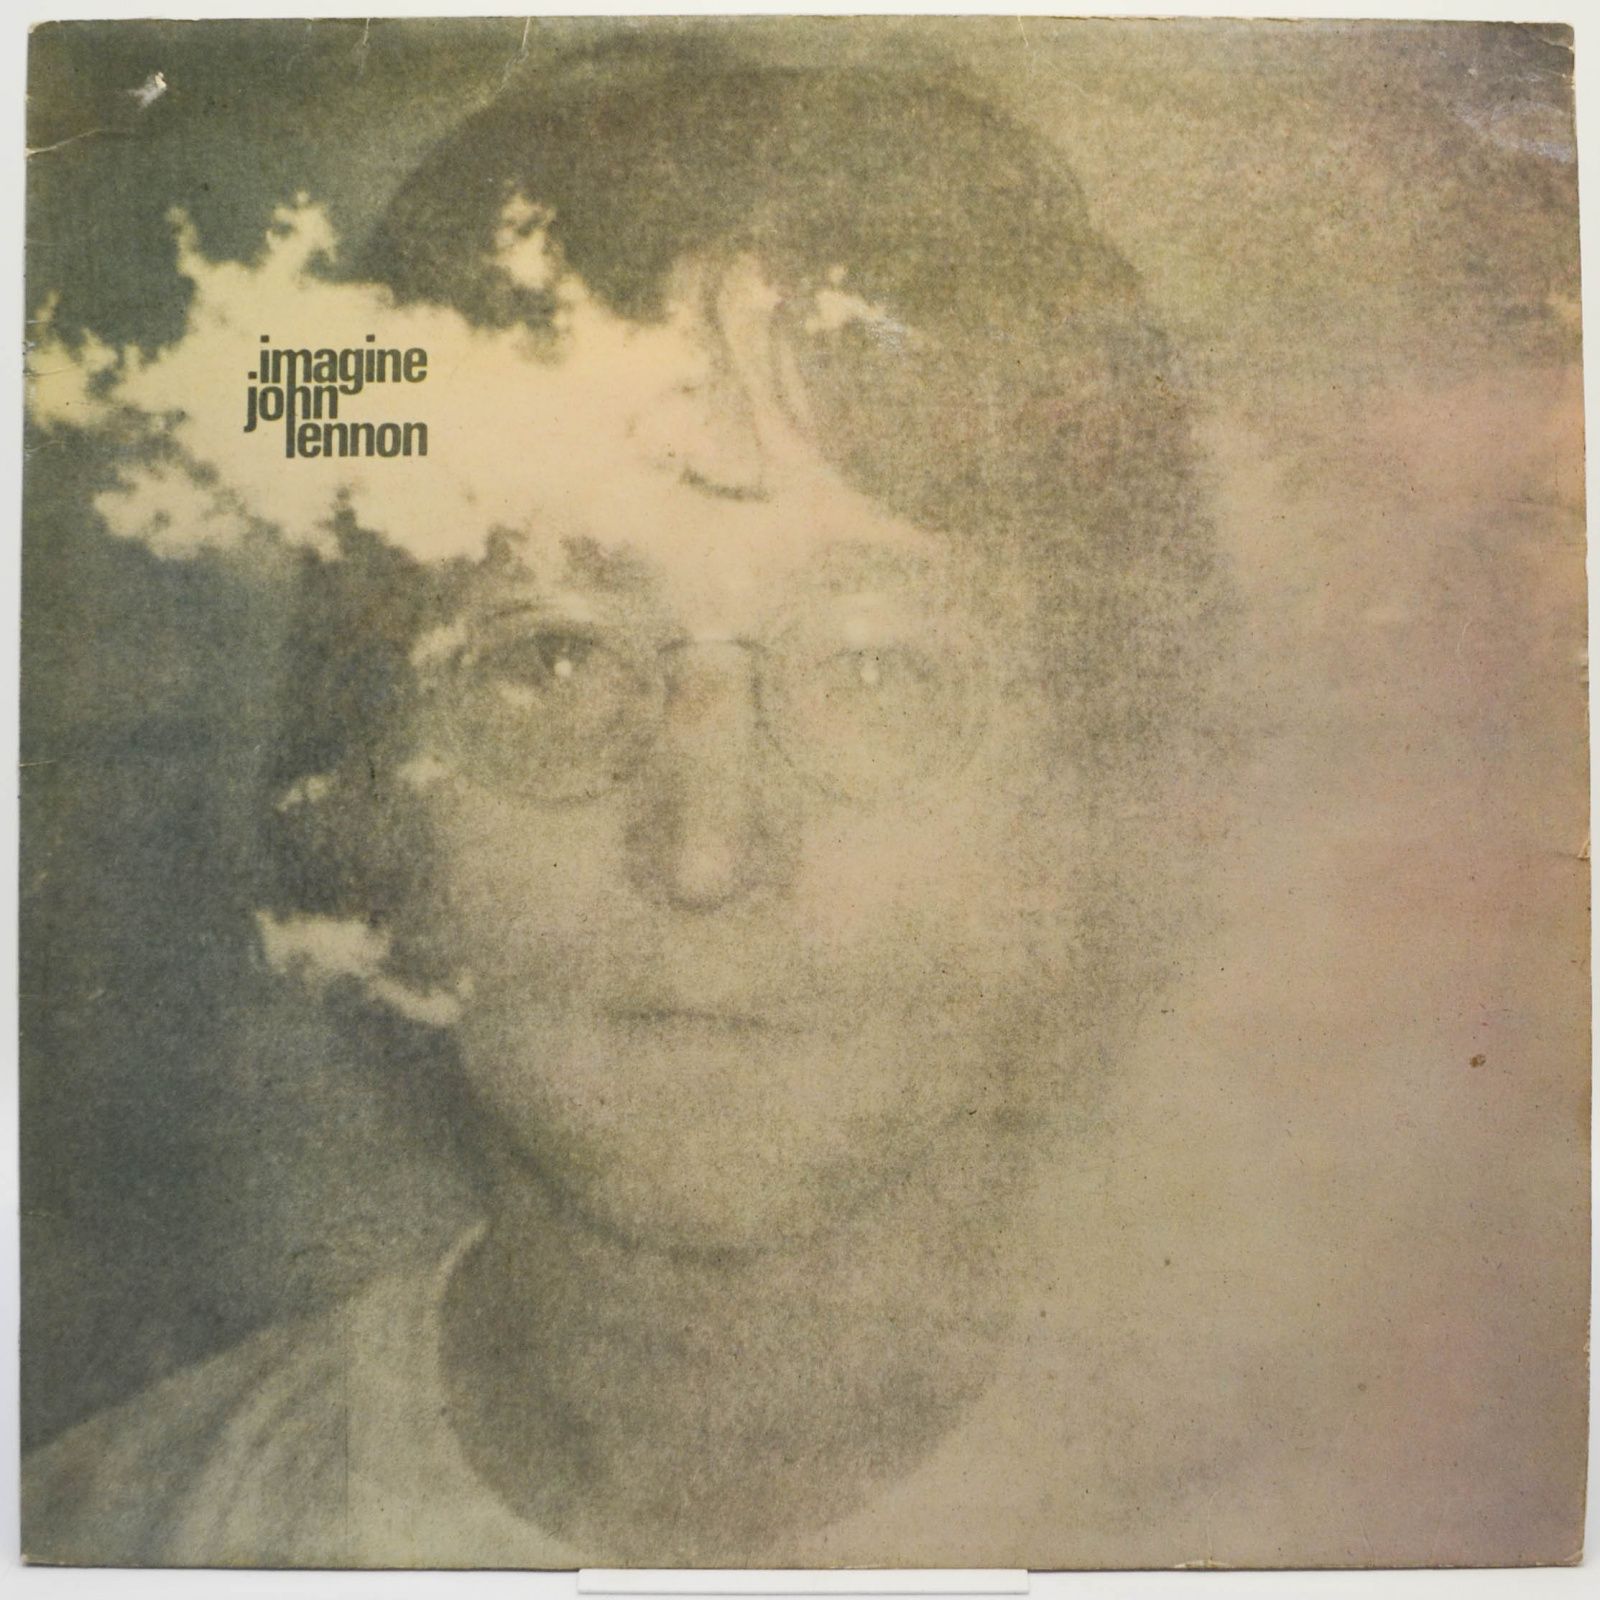 John Lennon — Imagine, 1971